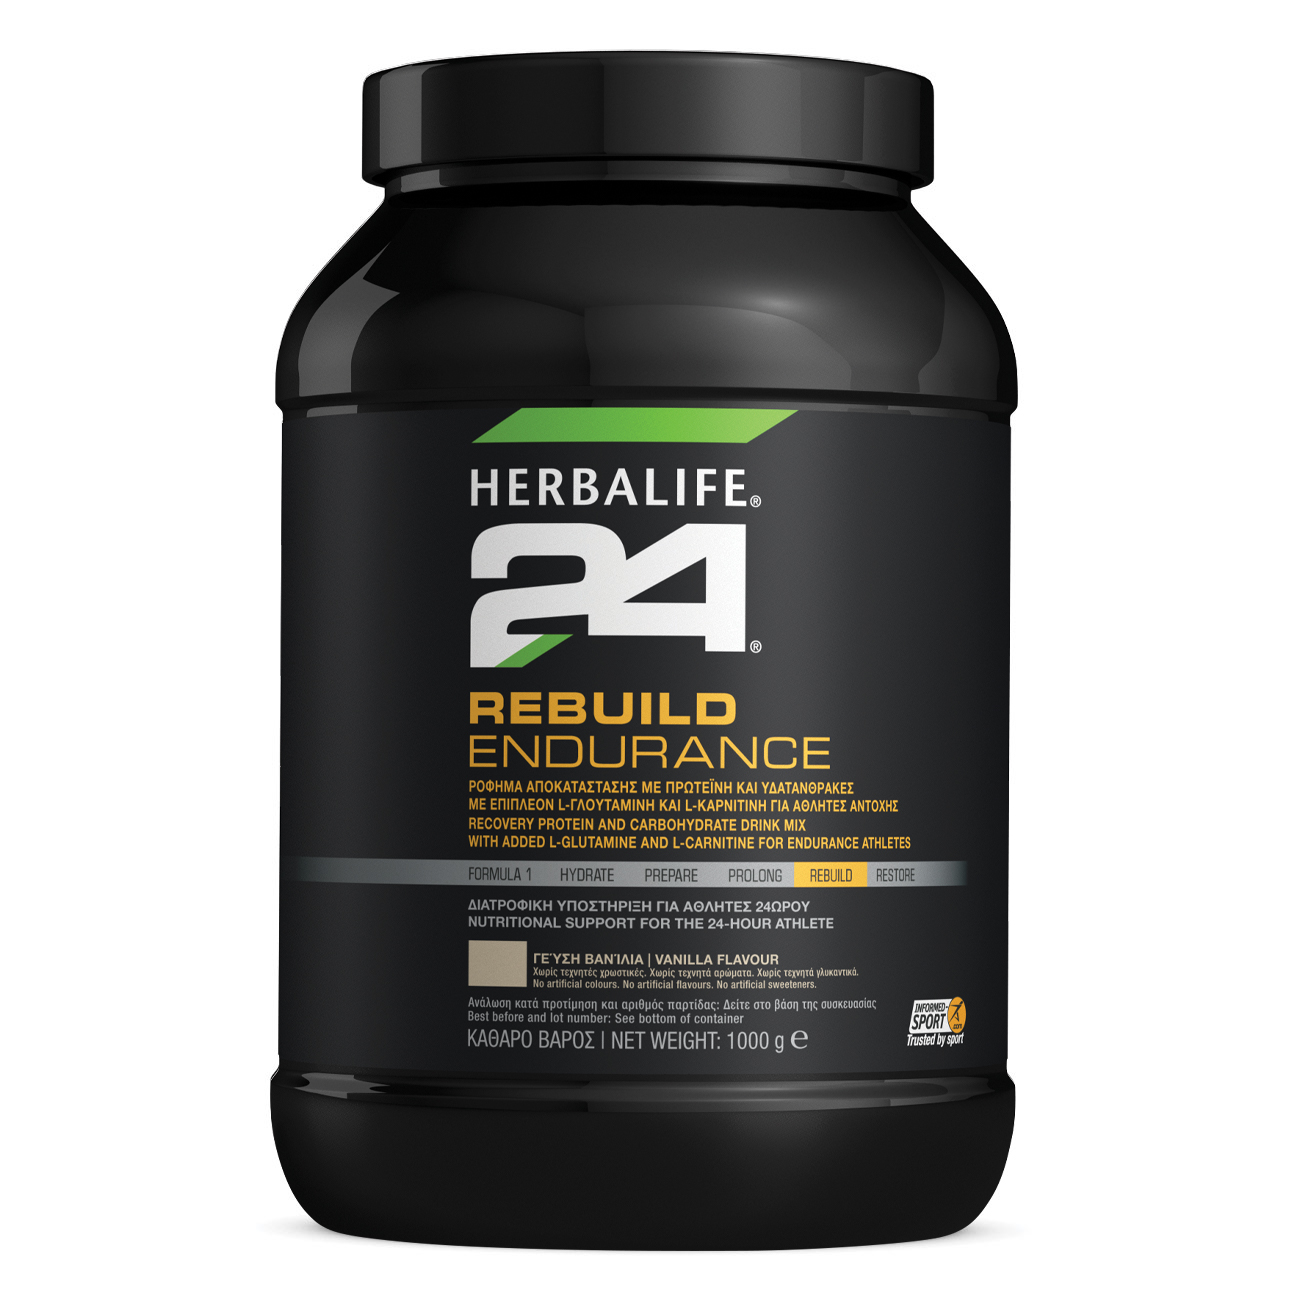 Herbalife24® Rebuild Endurance Πρωτεϊνούχο Ρόφημα  Βανίλια product shot.